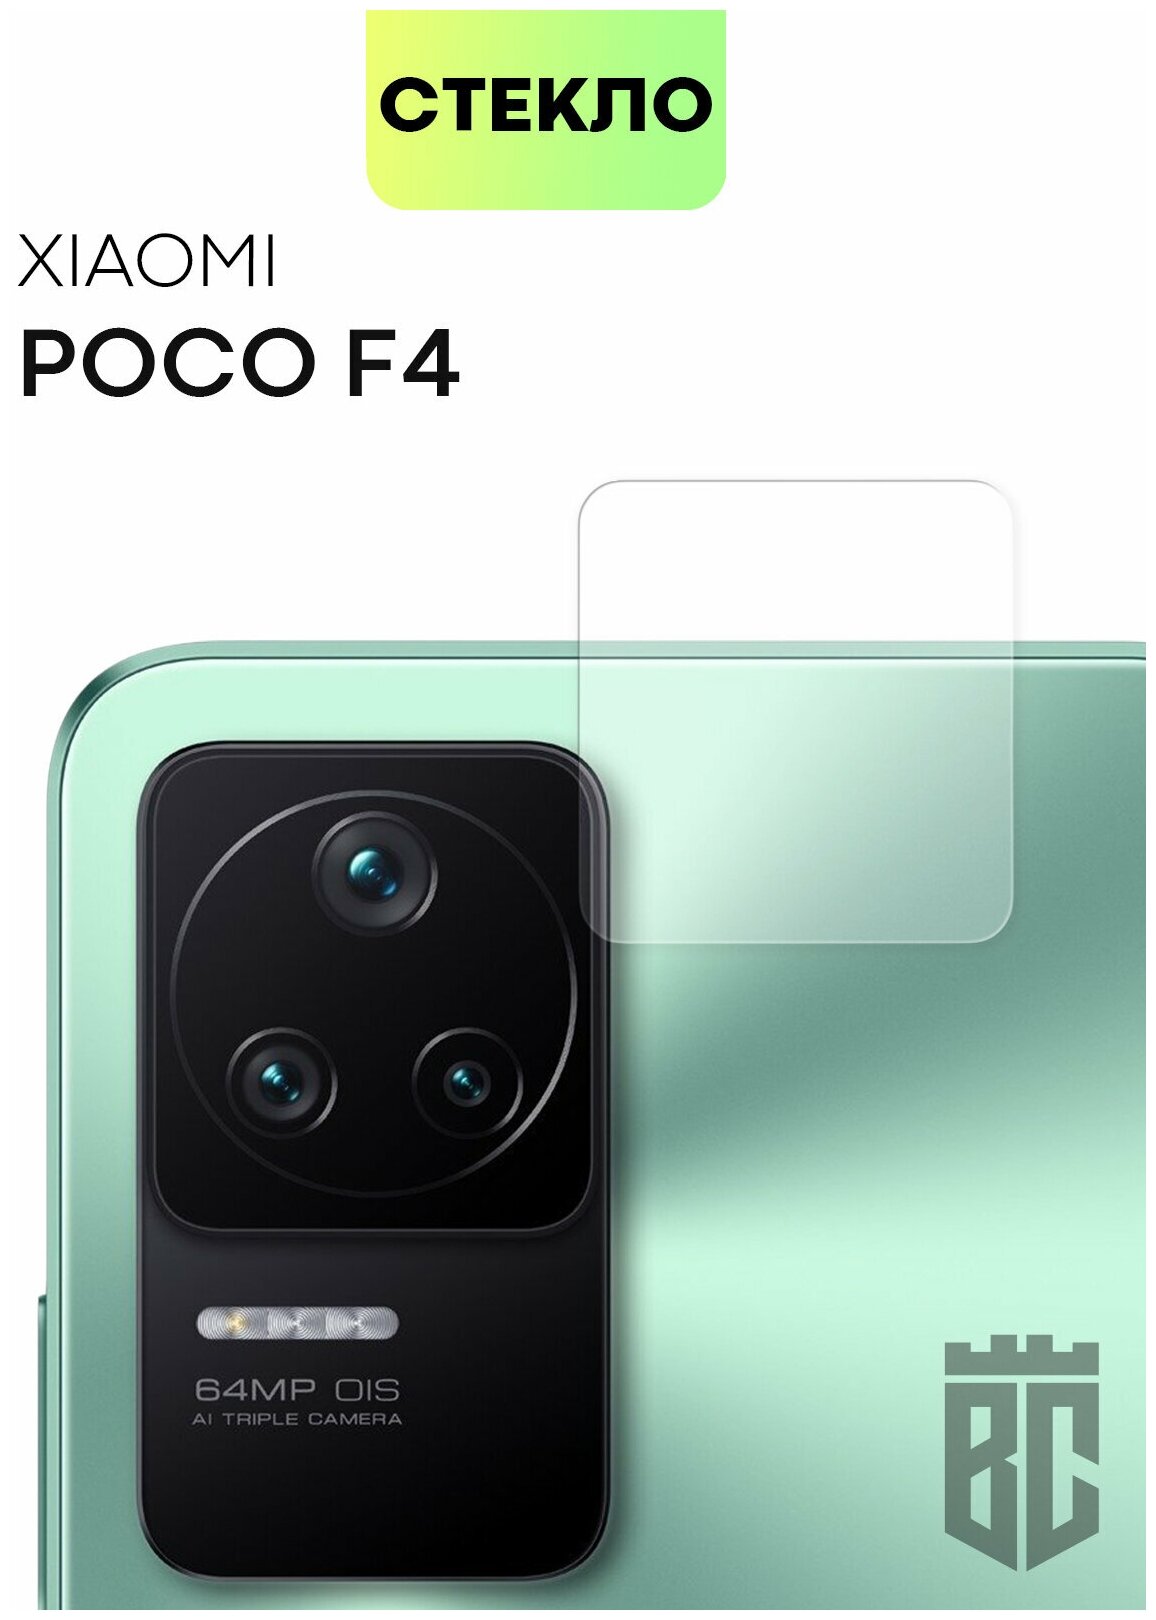 Стекло на камеру телефона Xiaomi Poco F4 (Сяоми Поко Ф4 Ксиаоми) защитное стекло BROSCORP для защиты модуля камер смартфона прозрачное